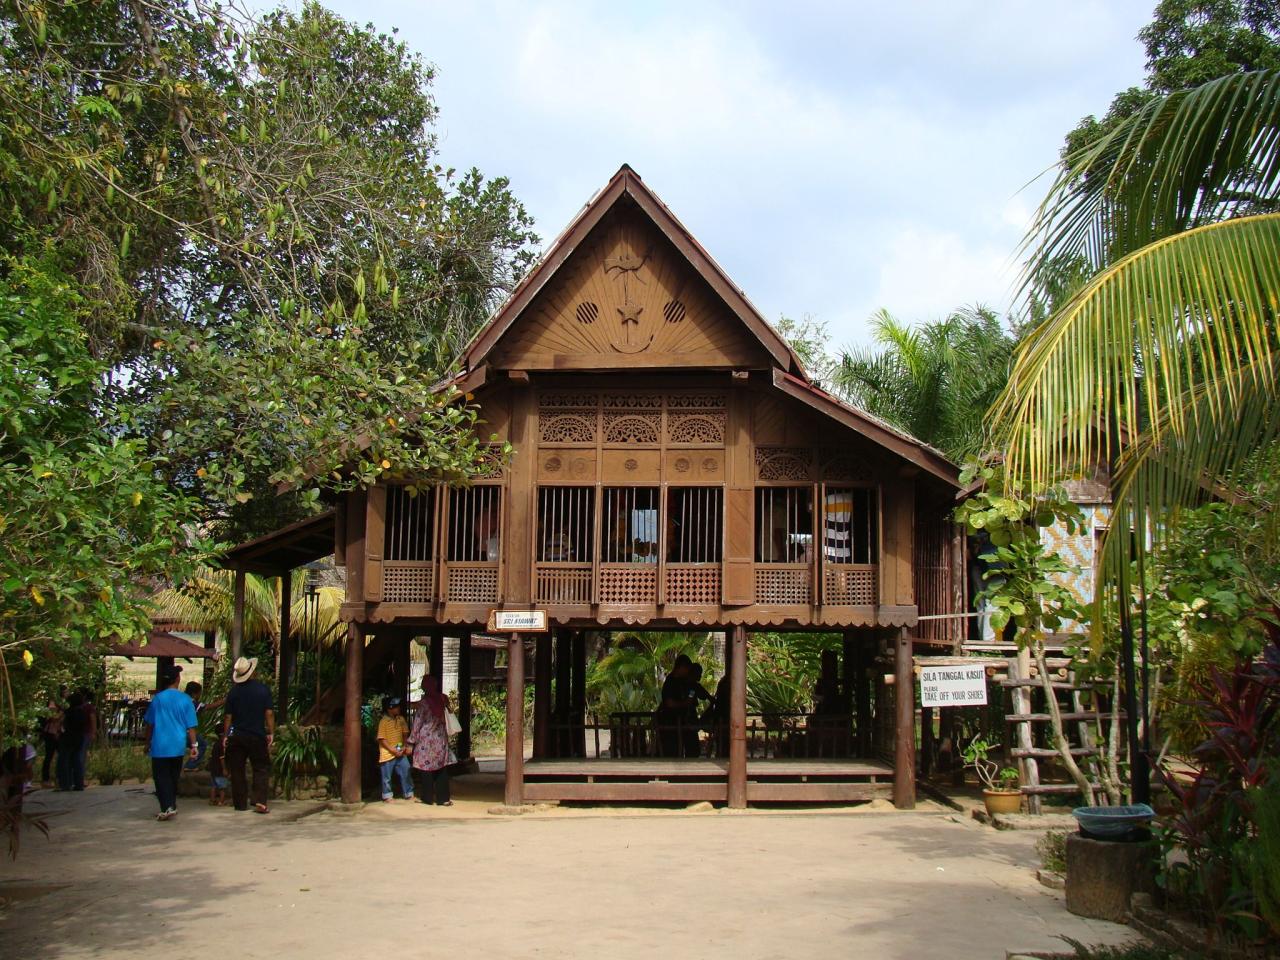 Kampung malay vernacular